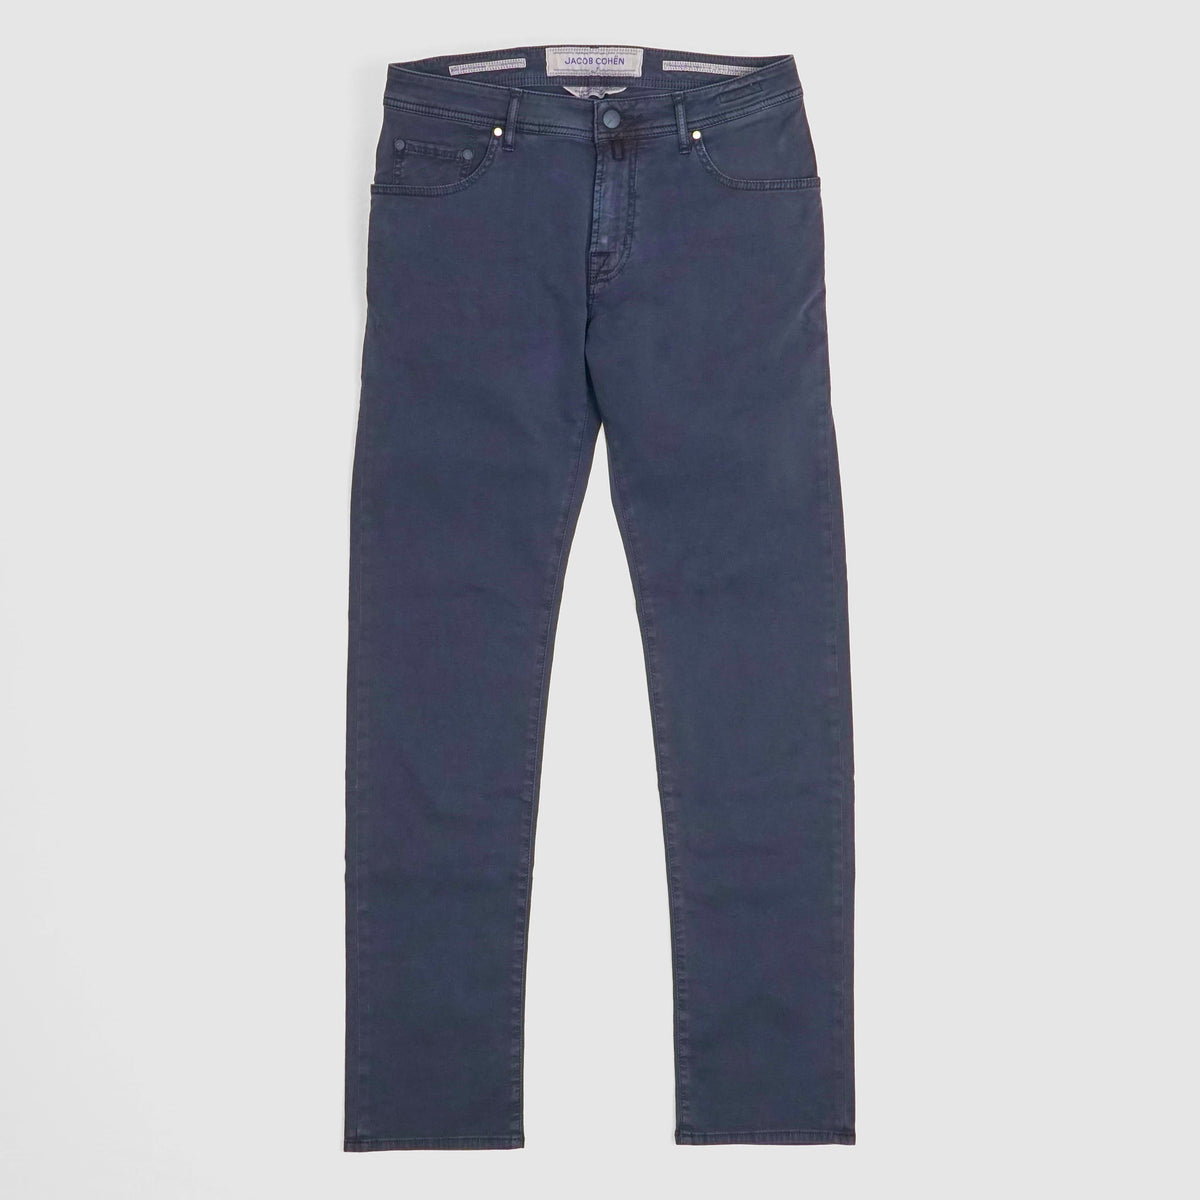 Jacob Cohen Rare Luxury Jeans